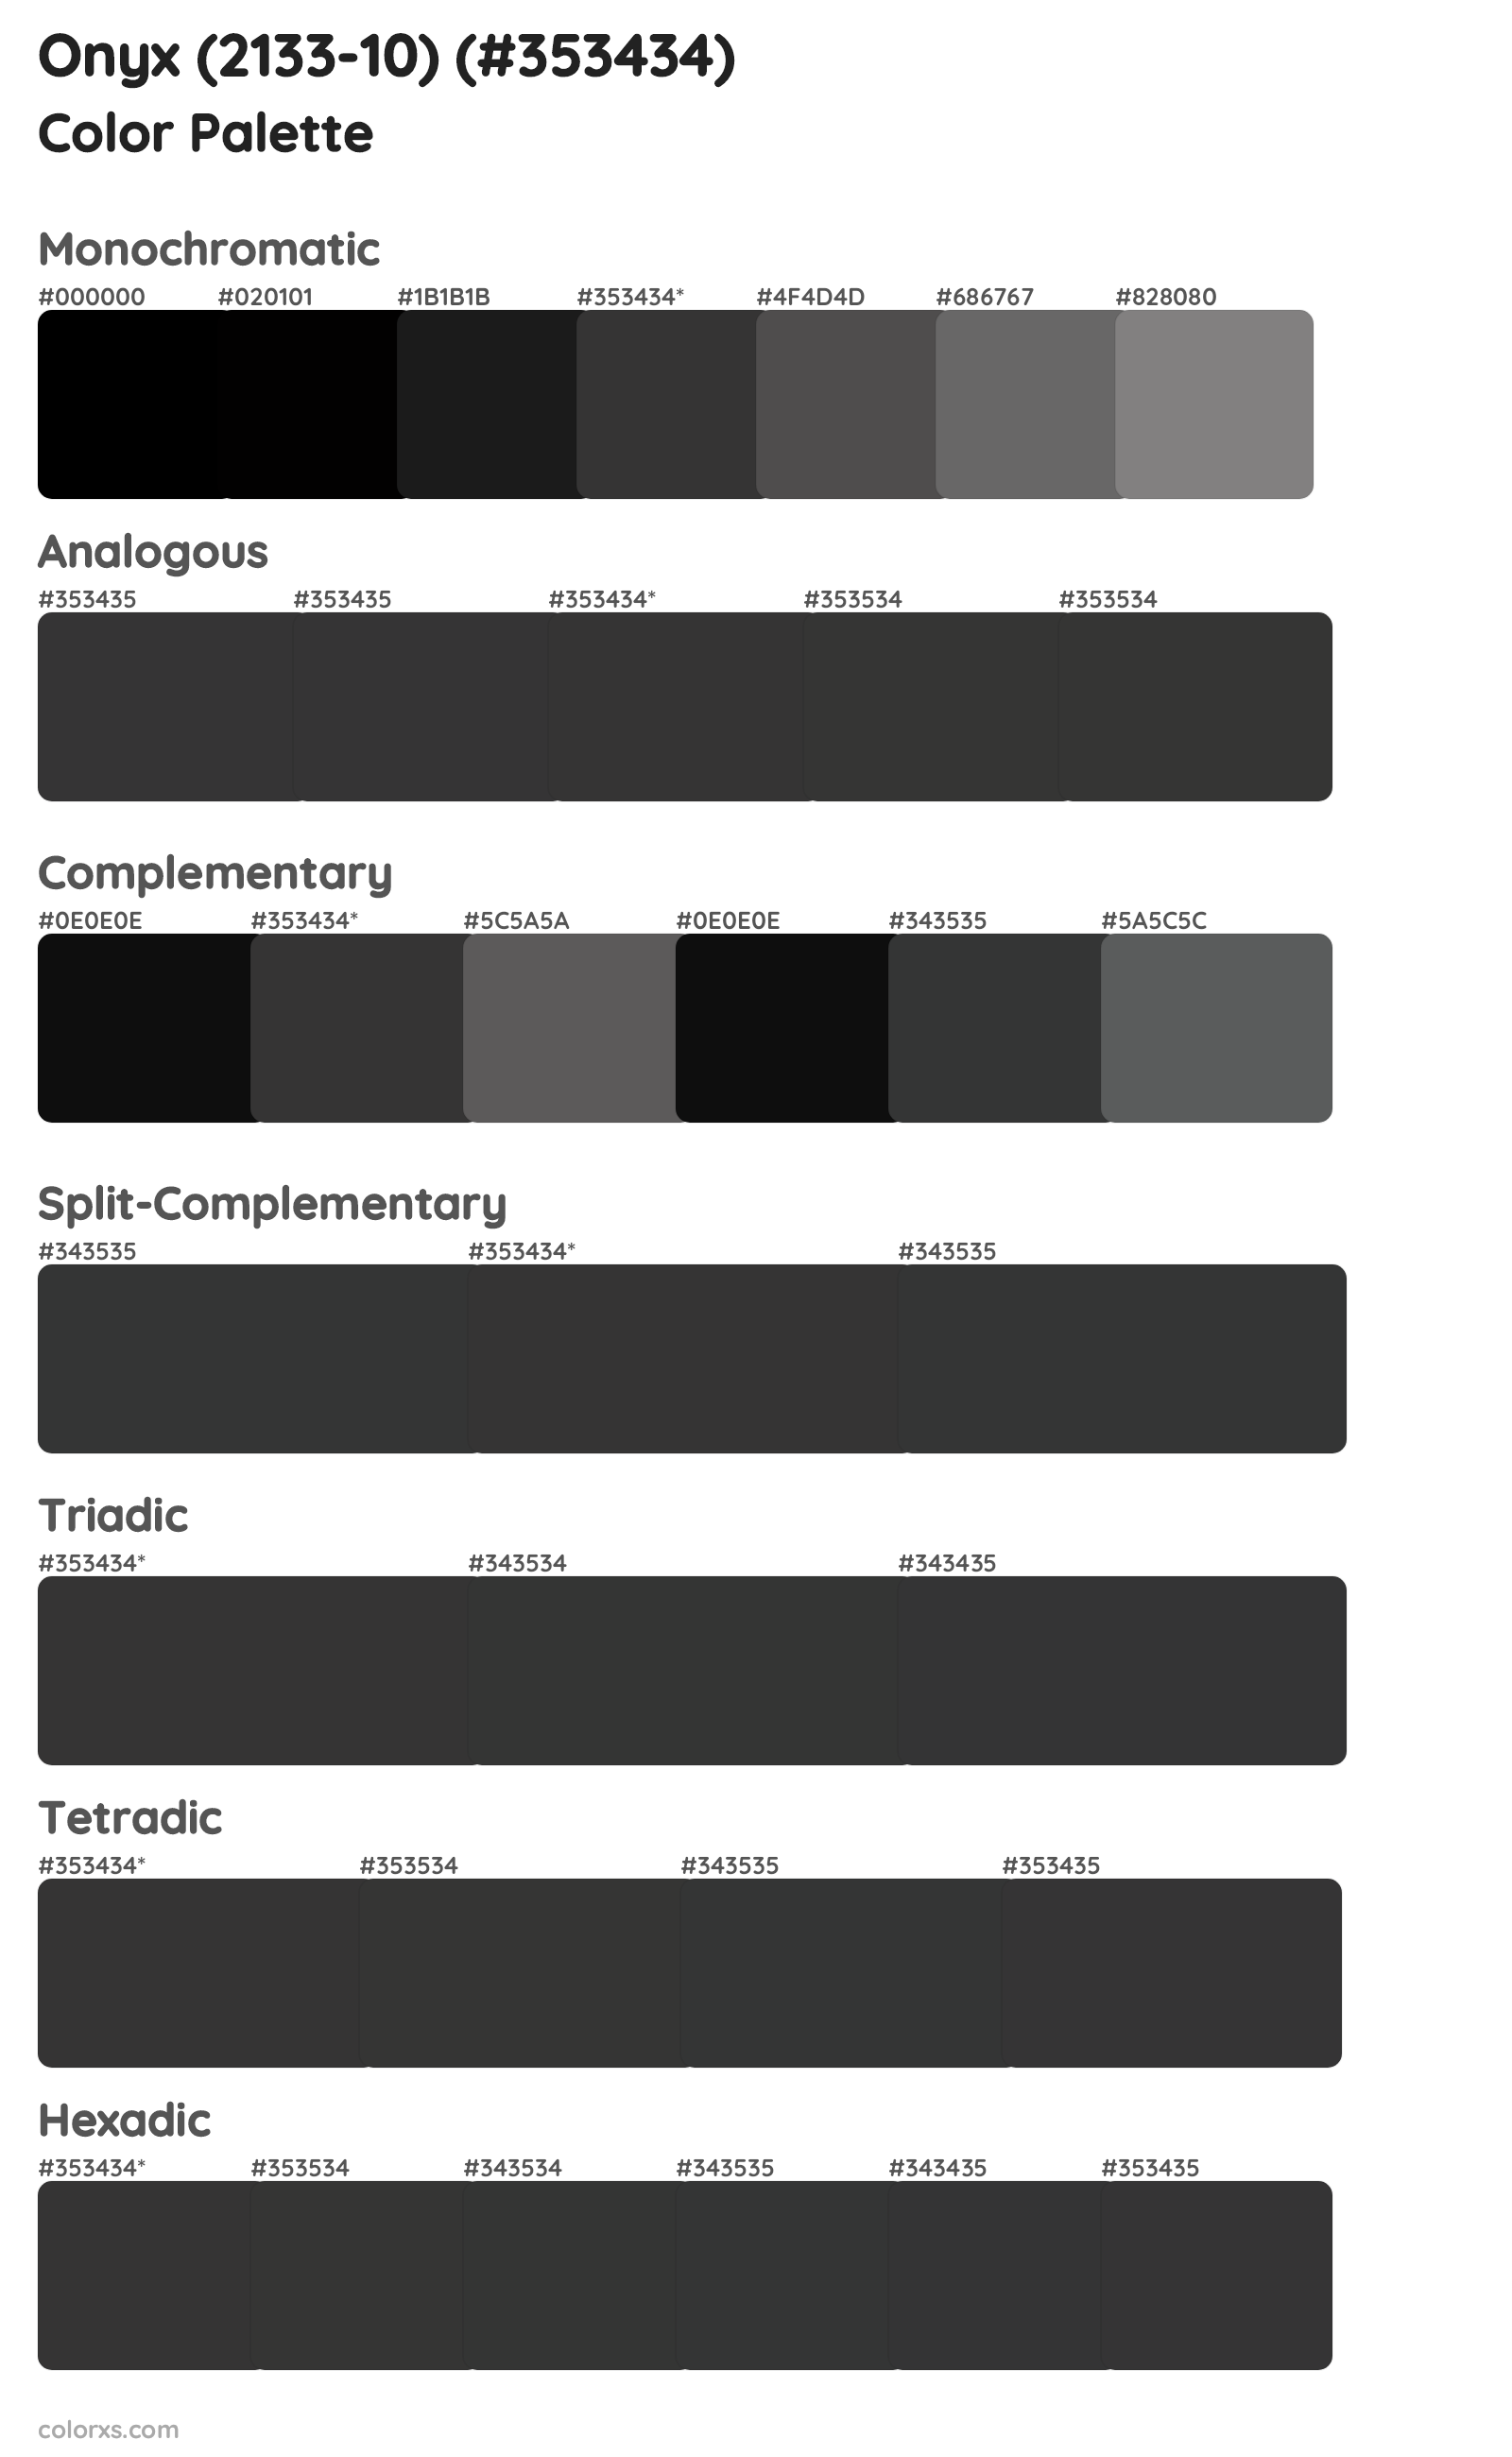 Onyx (2133-10) Color Scheme Palettes